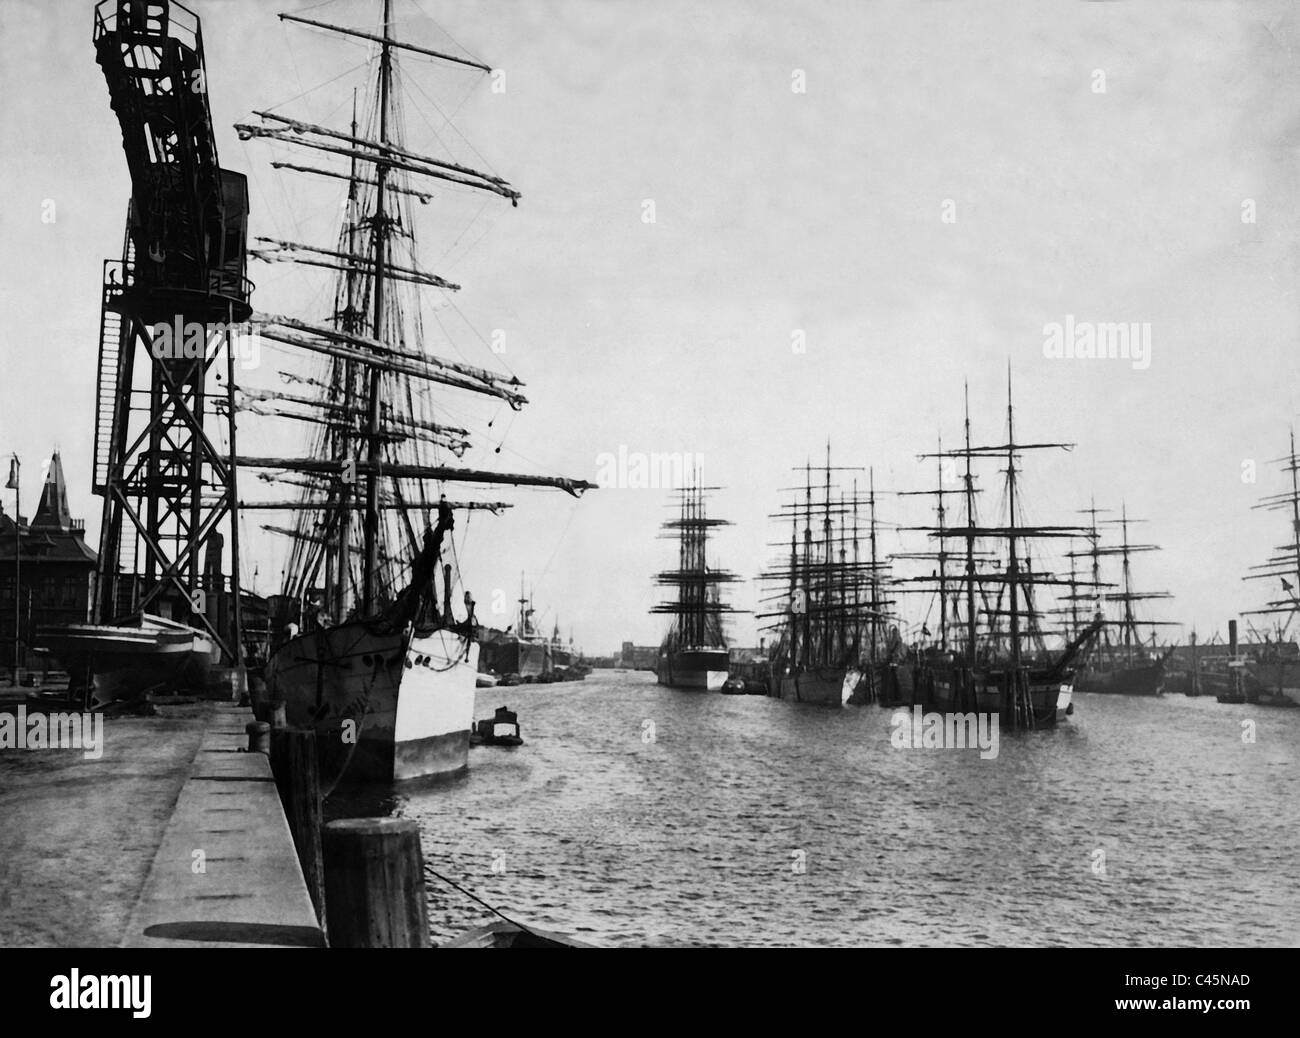 Hamburg 1936 Black and White Stock Photos & Images - Alamy